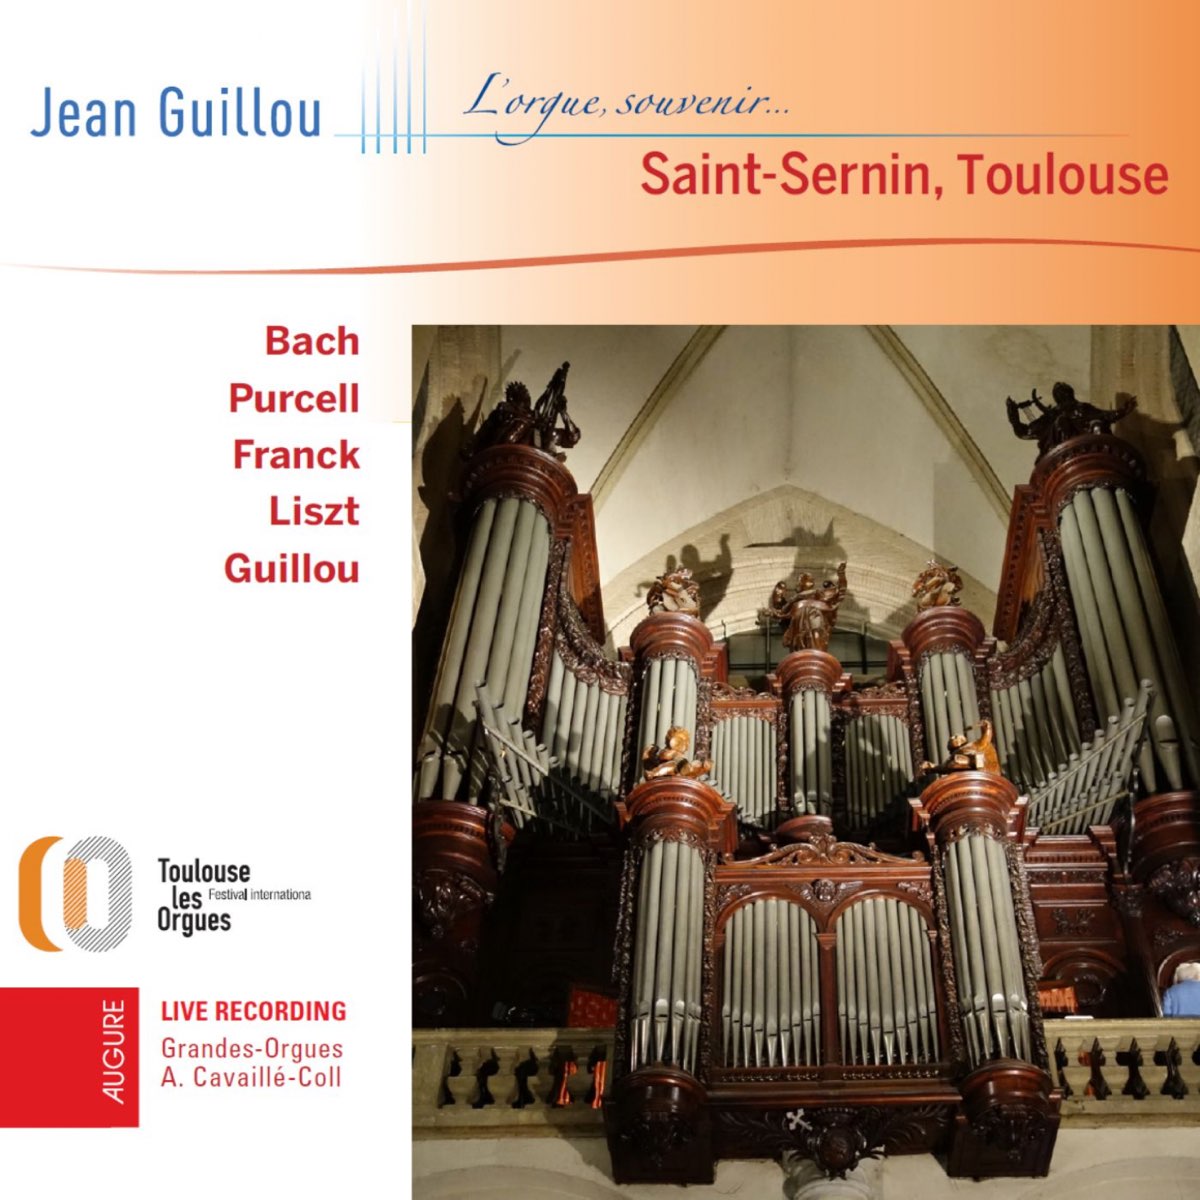 Jean Guillou à Saint-Sernin (L'orgue, souvenir... Live) - Album by Jean  Guillou - Apple Music